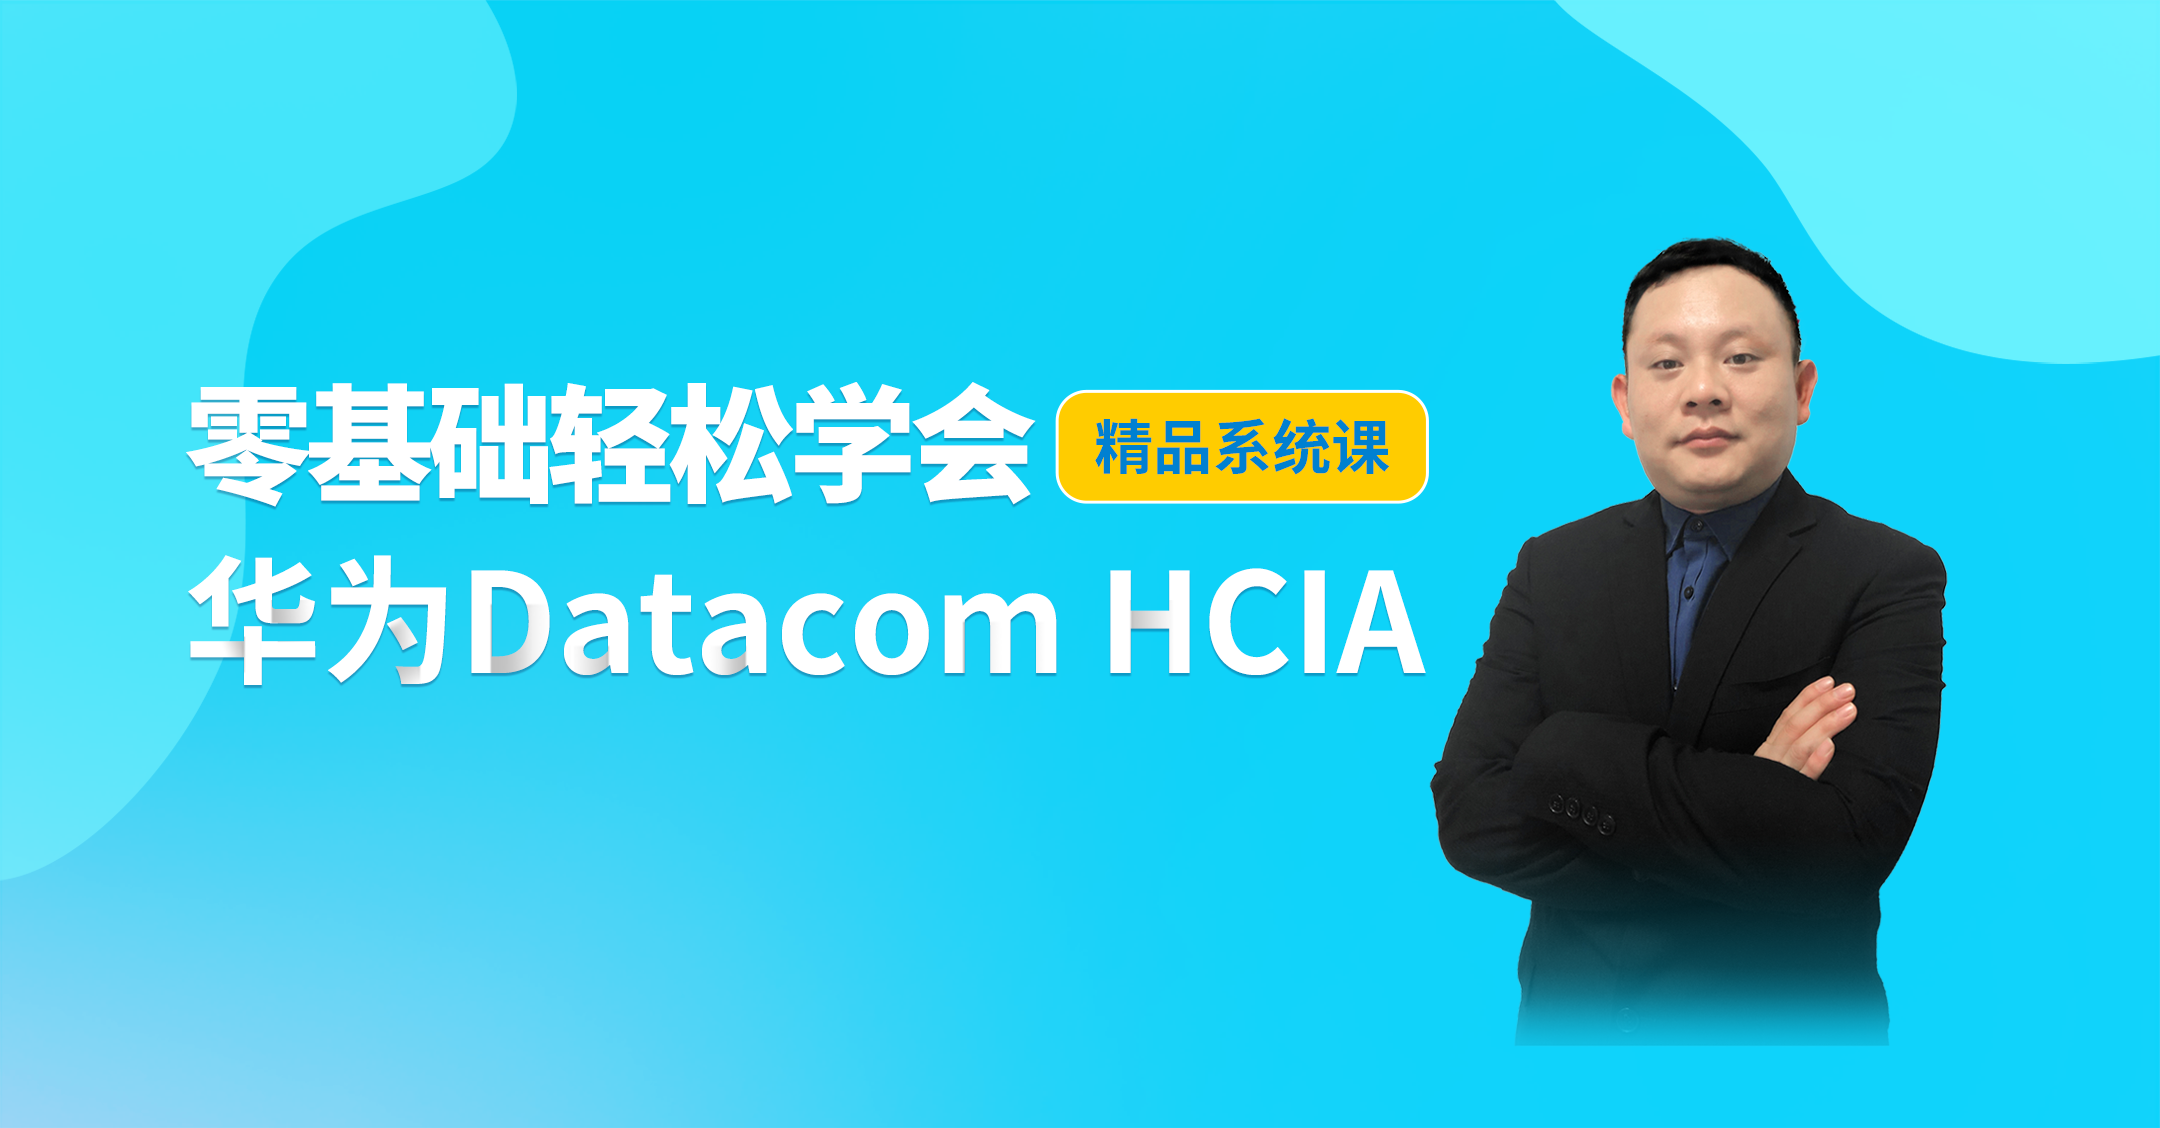 零基础轻松学会华为Datacom HCIA